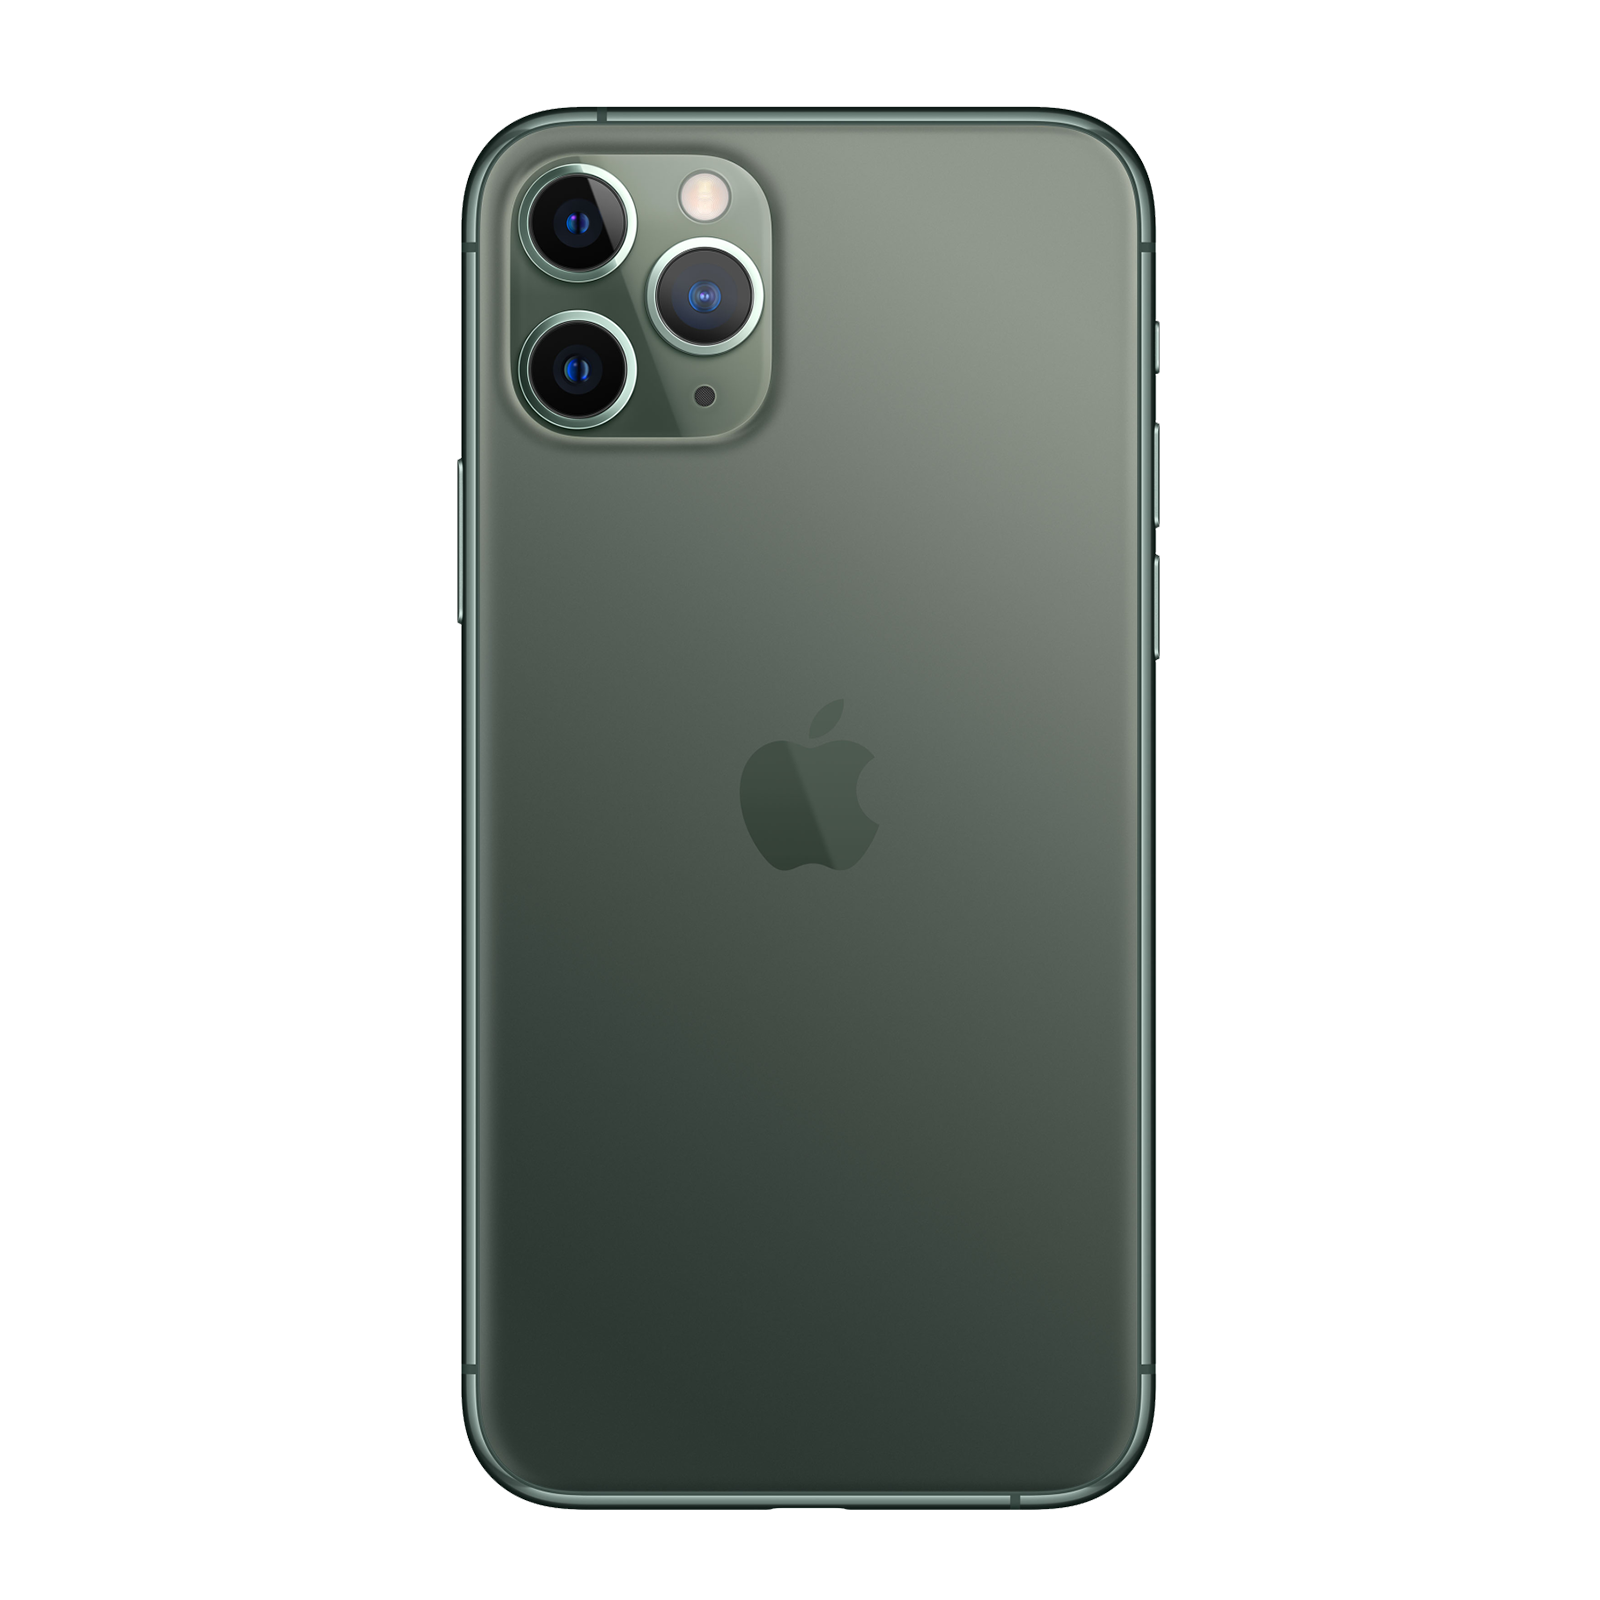 Apple iPhone 11 Pro Max 512GB Midnight Green Good - AT&T